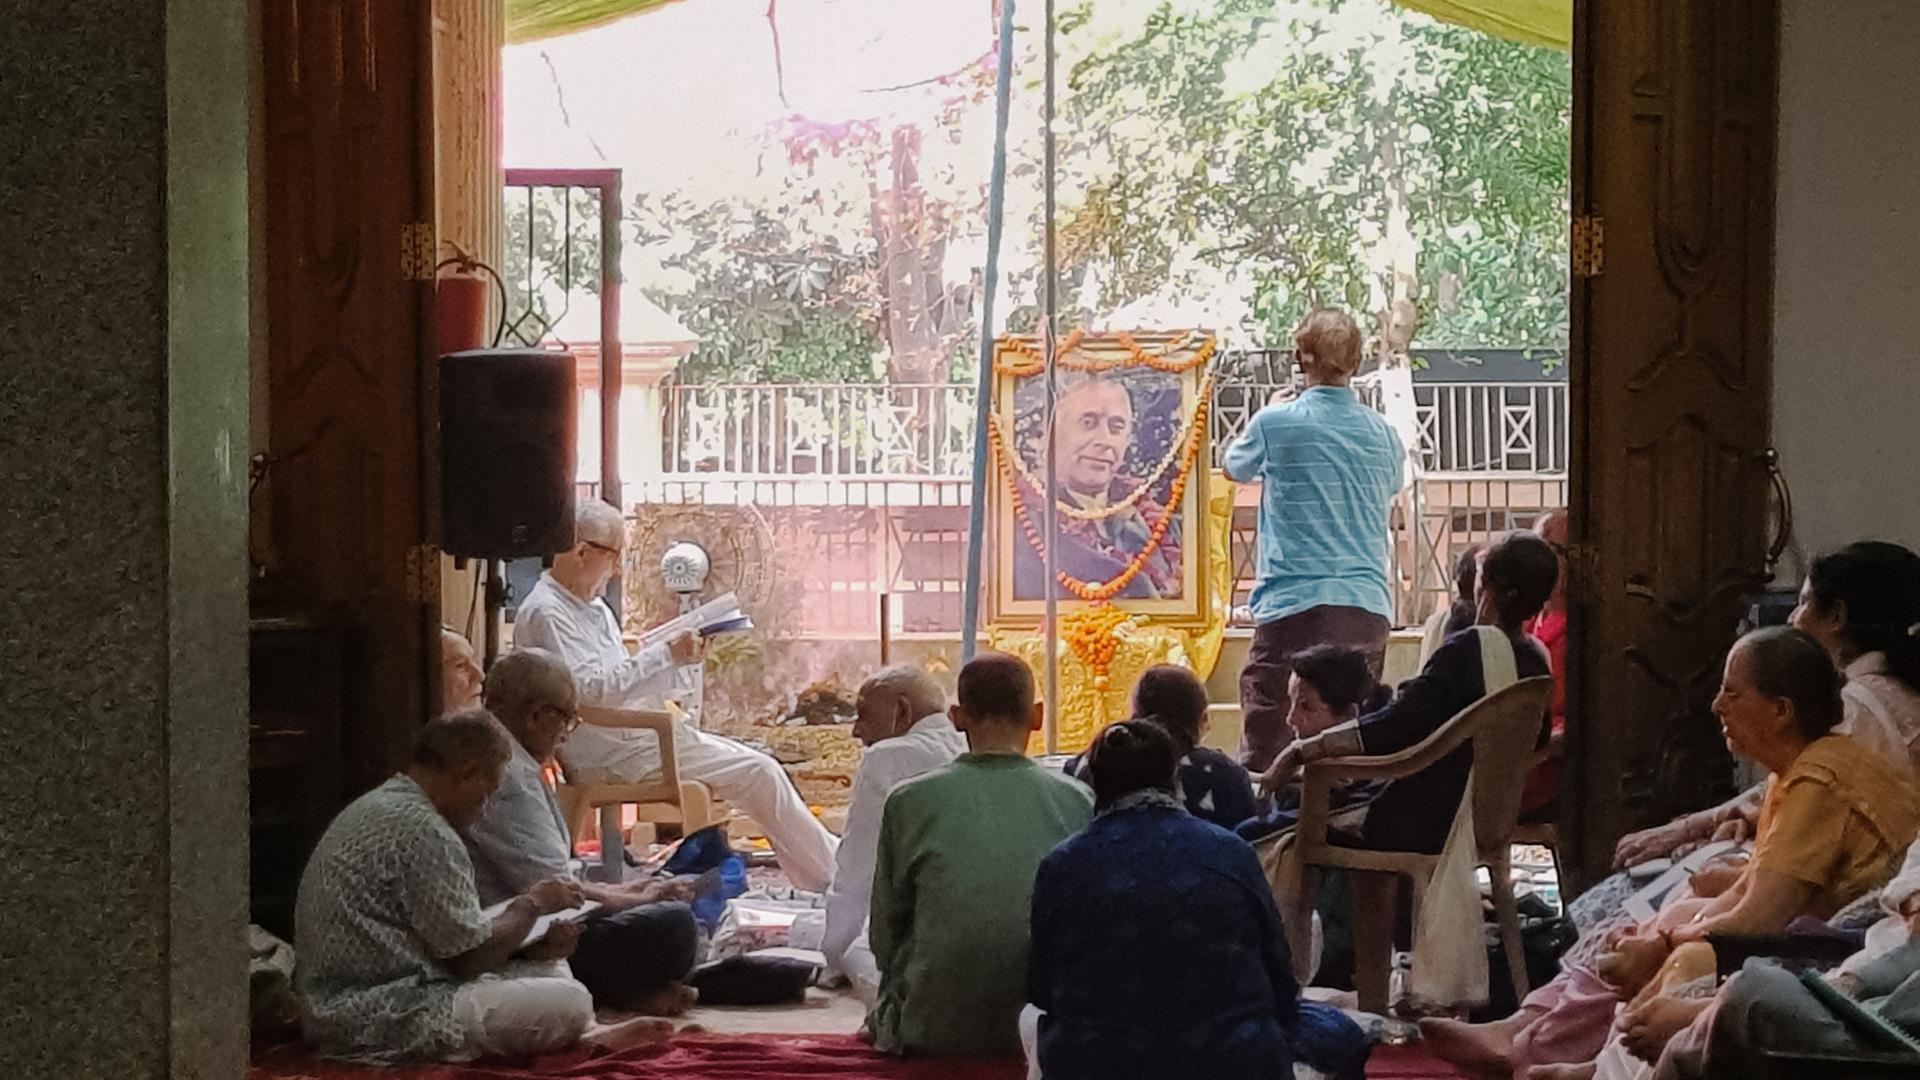 Menschen sitzen und knien in einem hindustischen Tempel vor dem golden gerahmten und mit Blumengirlanden geschmückten Porträt eines Mannes.